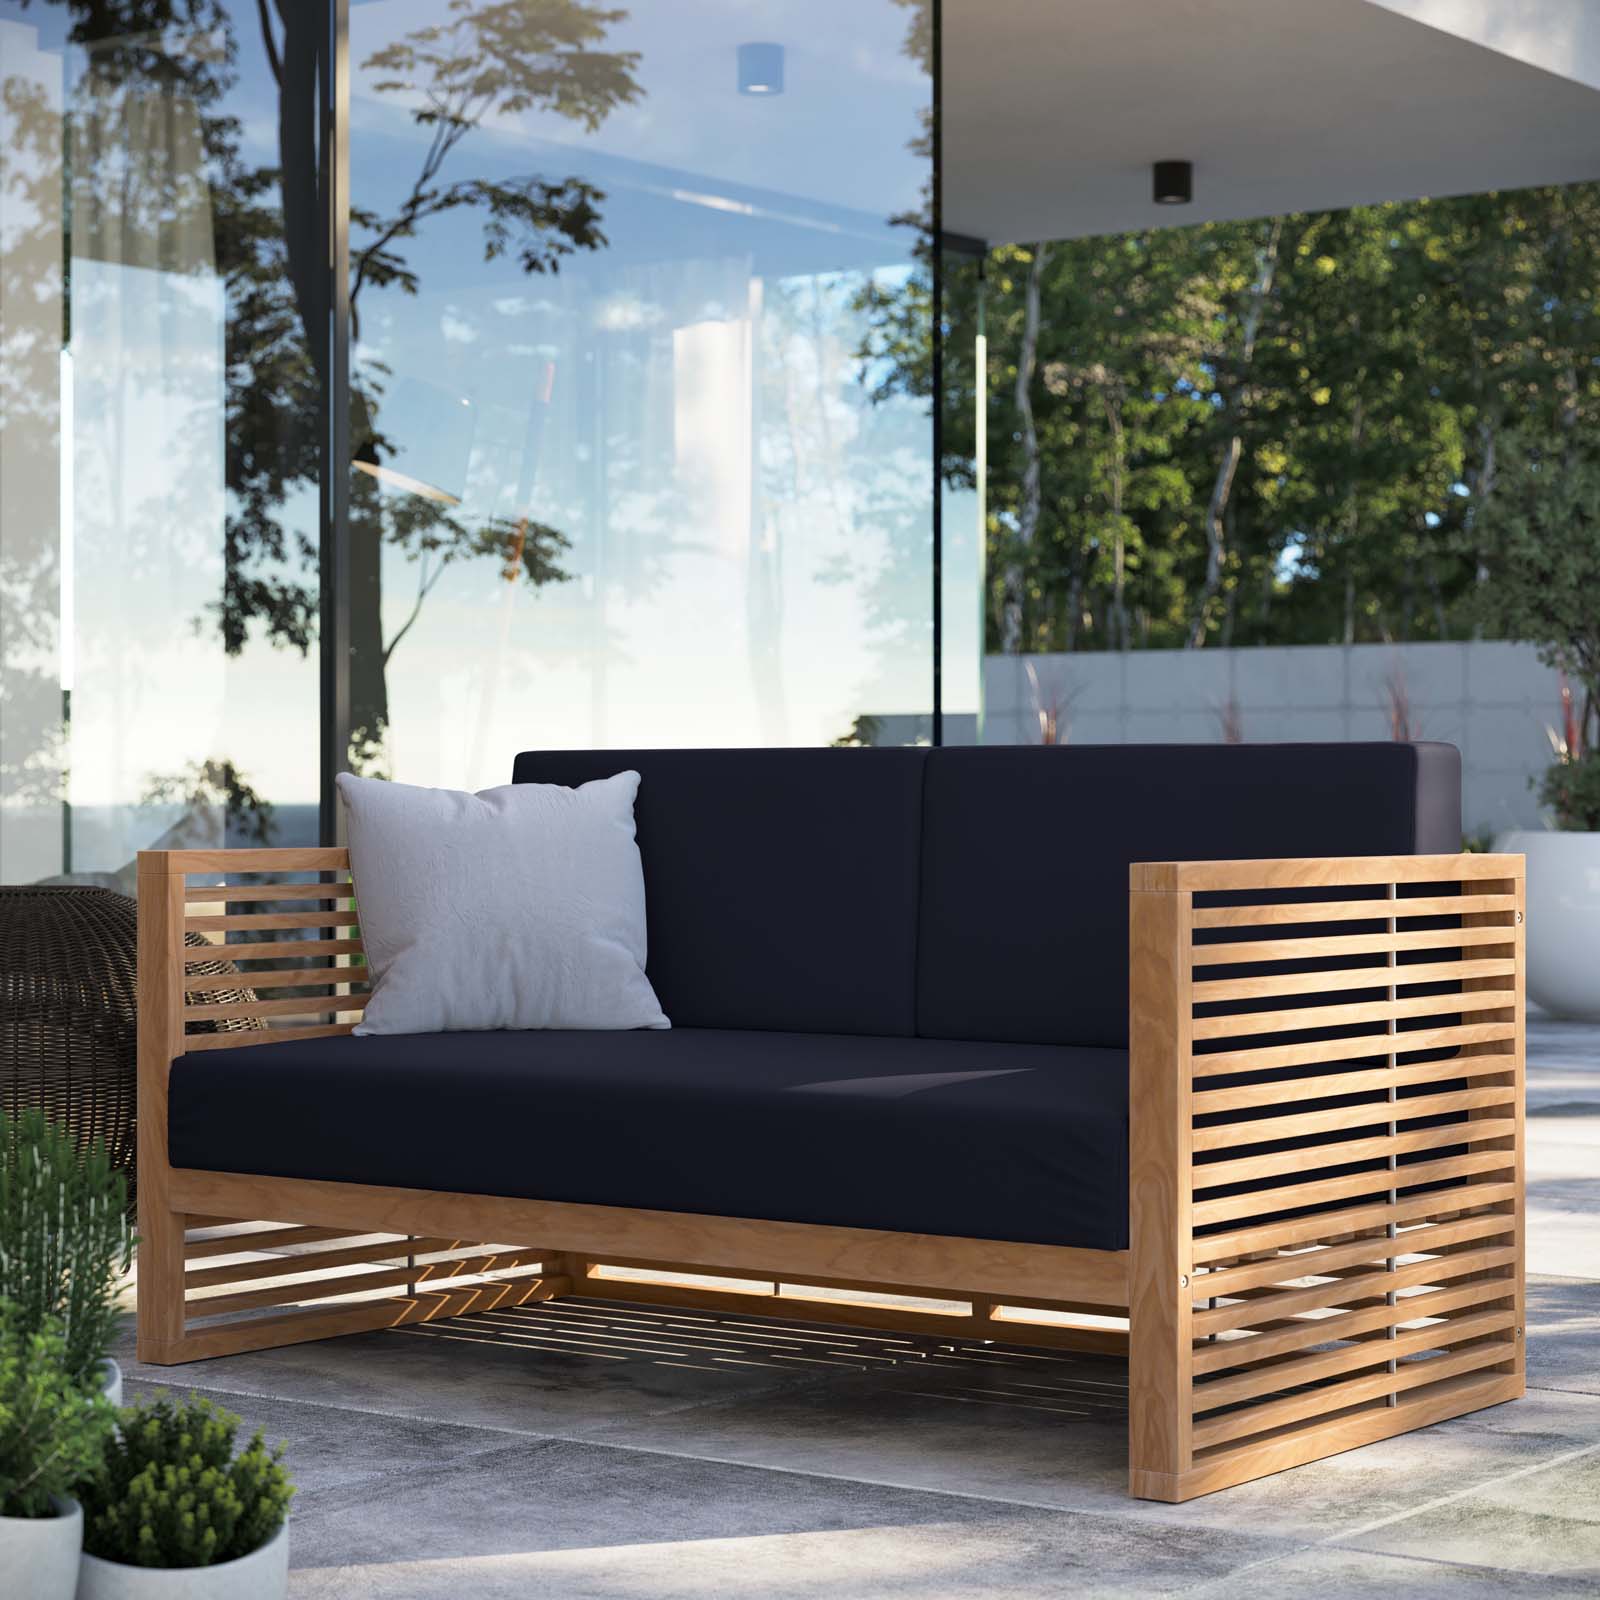 Carlsbad Teak Wood Outdoor Patio Loveseat - East Shore Modern Home Furnishings